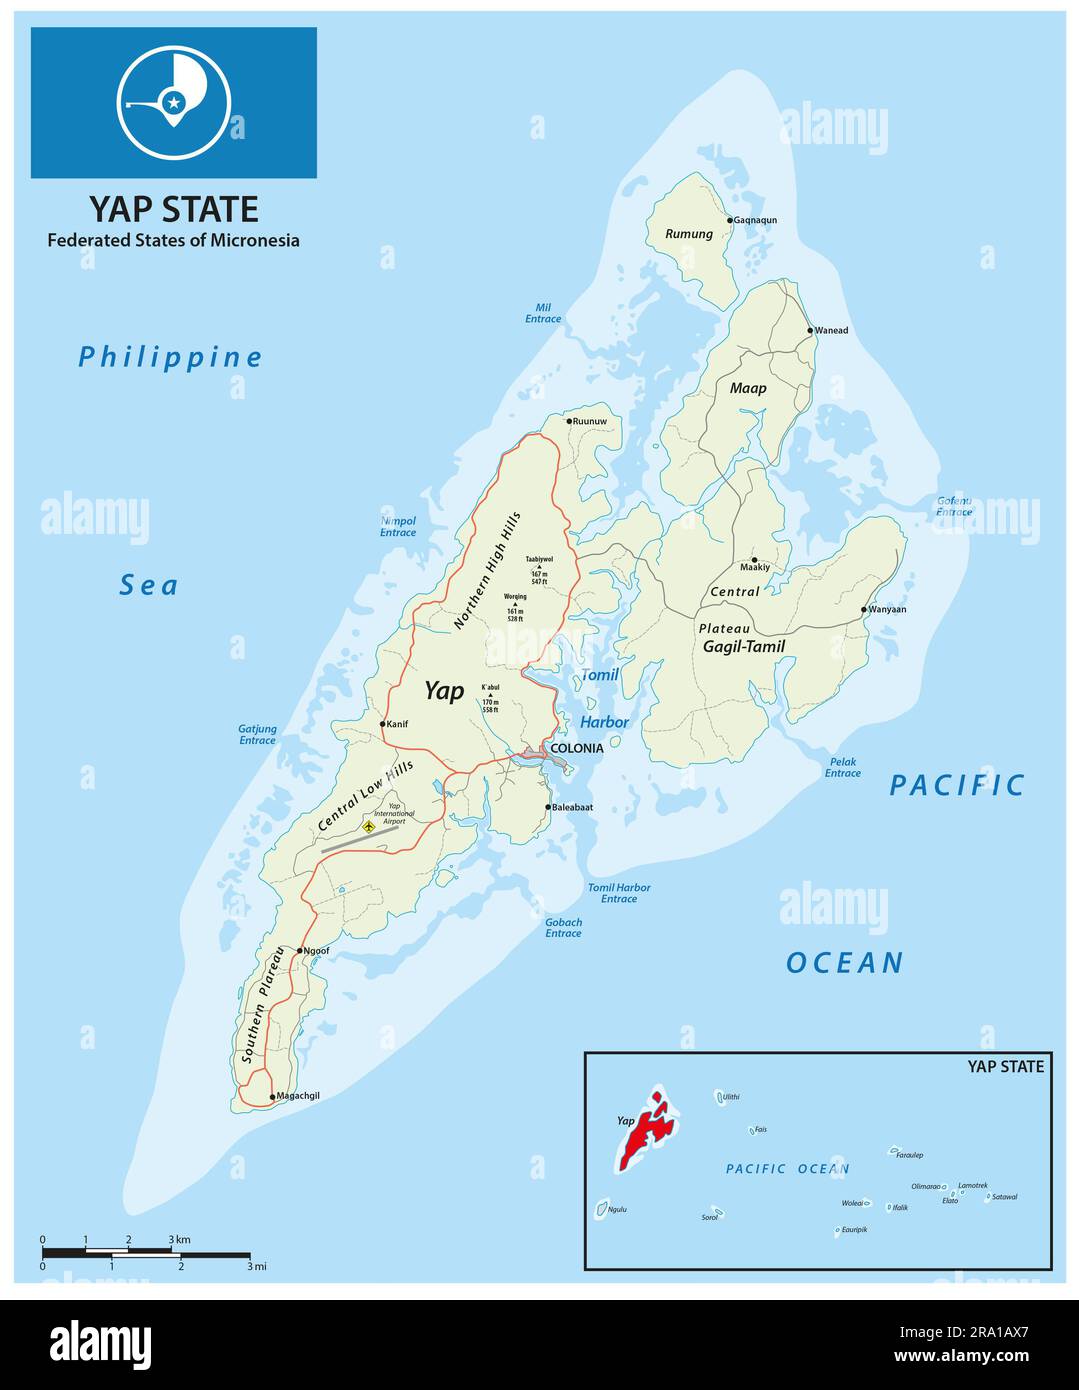 Carte routière de l'île de Yap, États fédérés de Micronésie Banque D'Images